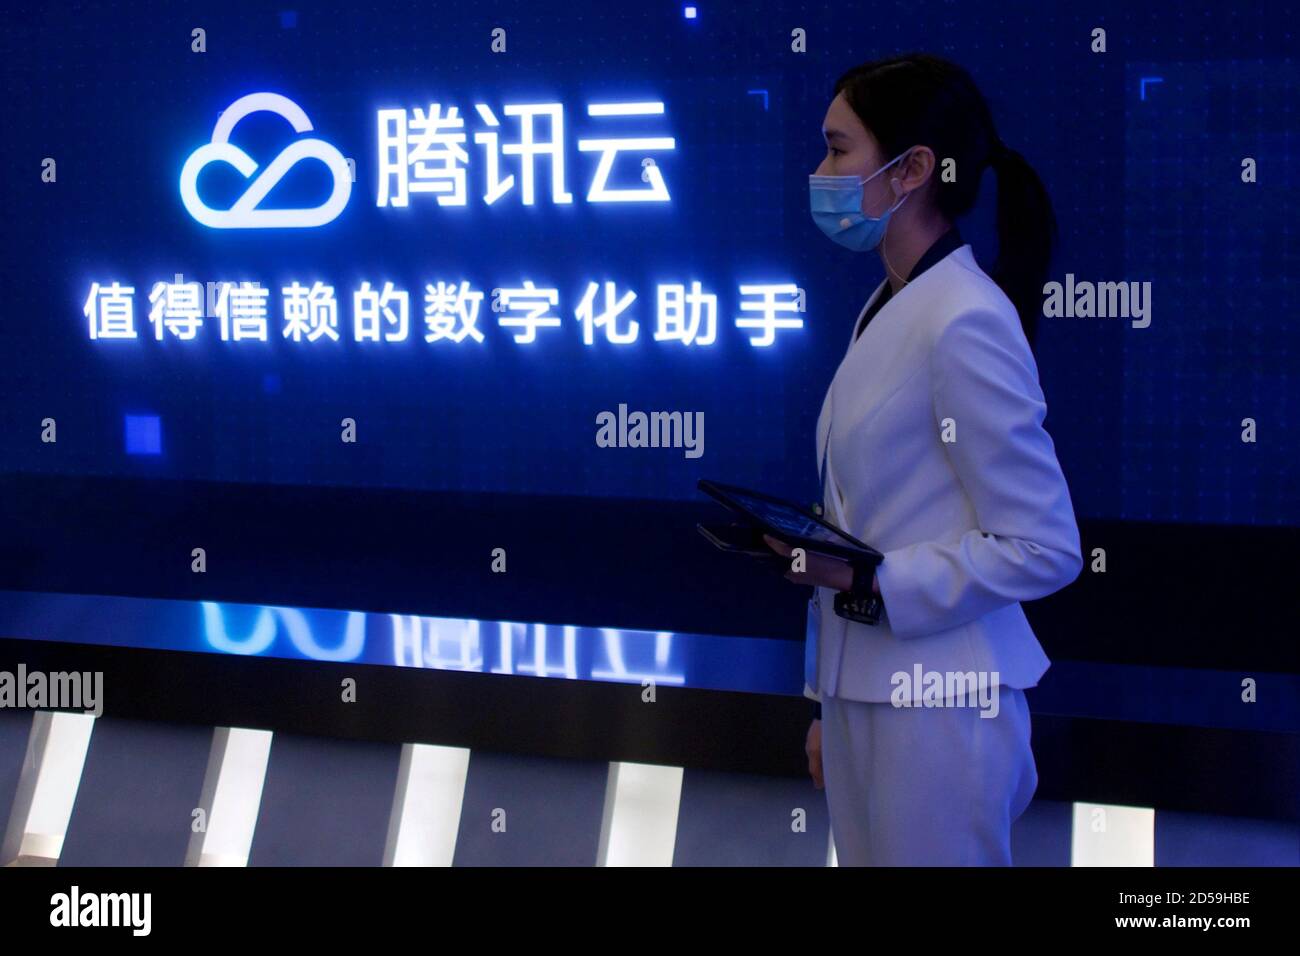 Ein Mitarbeiter stellt den Tencent Cloud-Service während einer von der Regierung organisierten Medienreise zum Tencent-Hauptquartier in Shenzhen, Provinz Guangdong, China, vor 27. September 2020. Bild aufgenommen am 27. September 2020. REUTERS/David Kirton Stockfoto